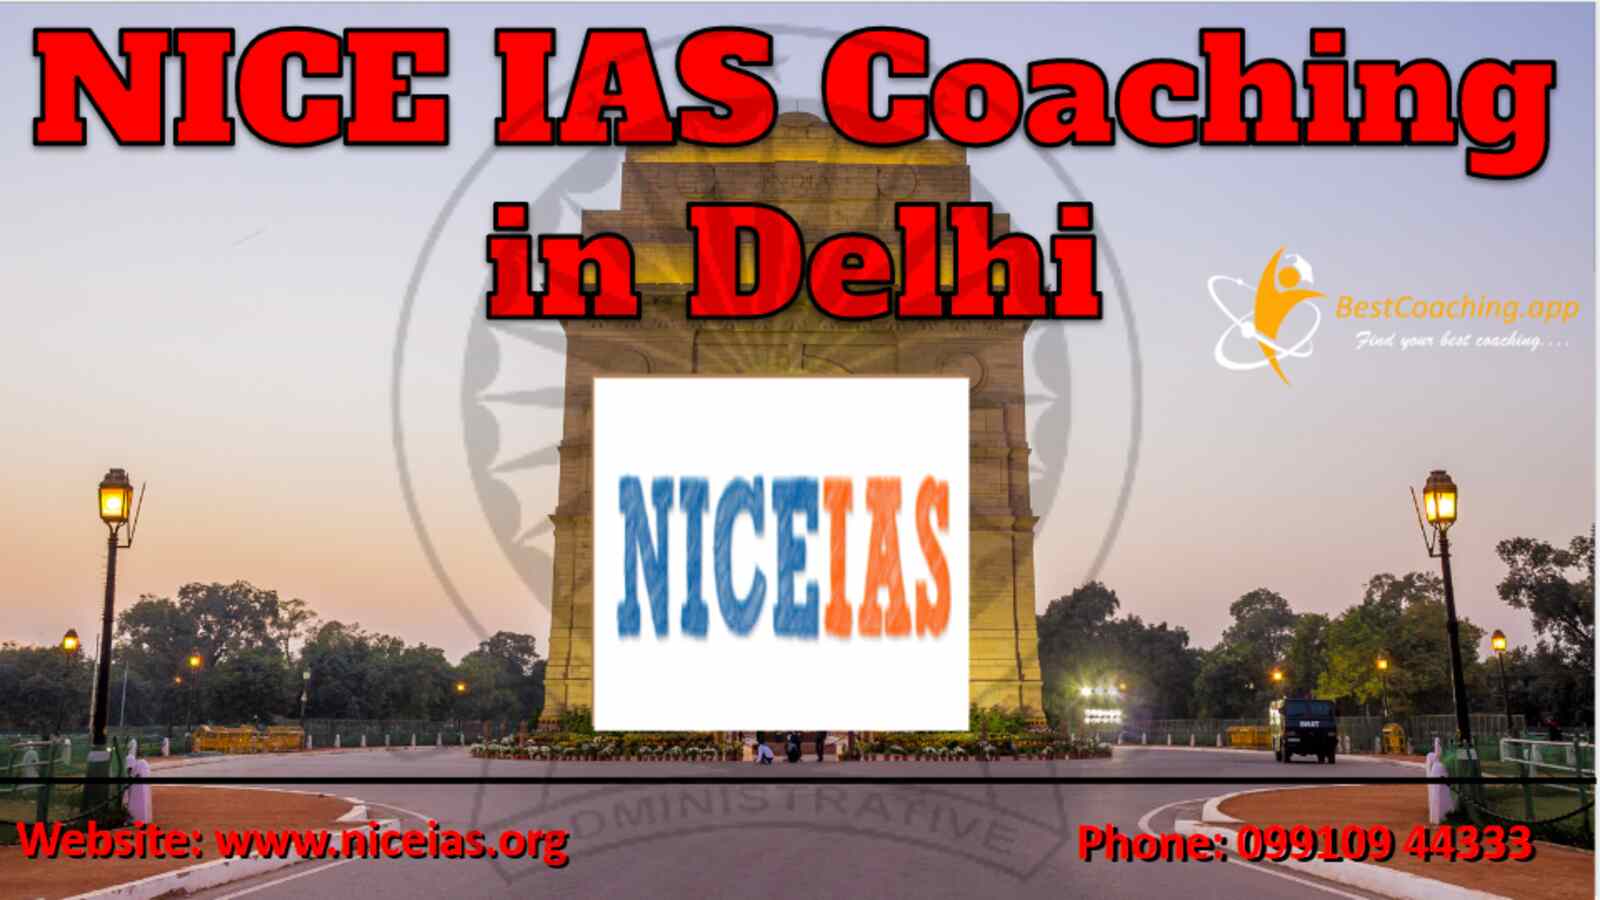 NICE IAS Coaching Delhi